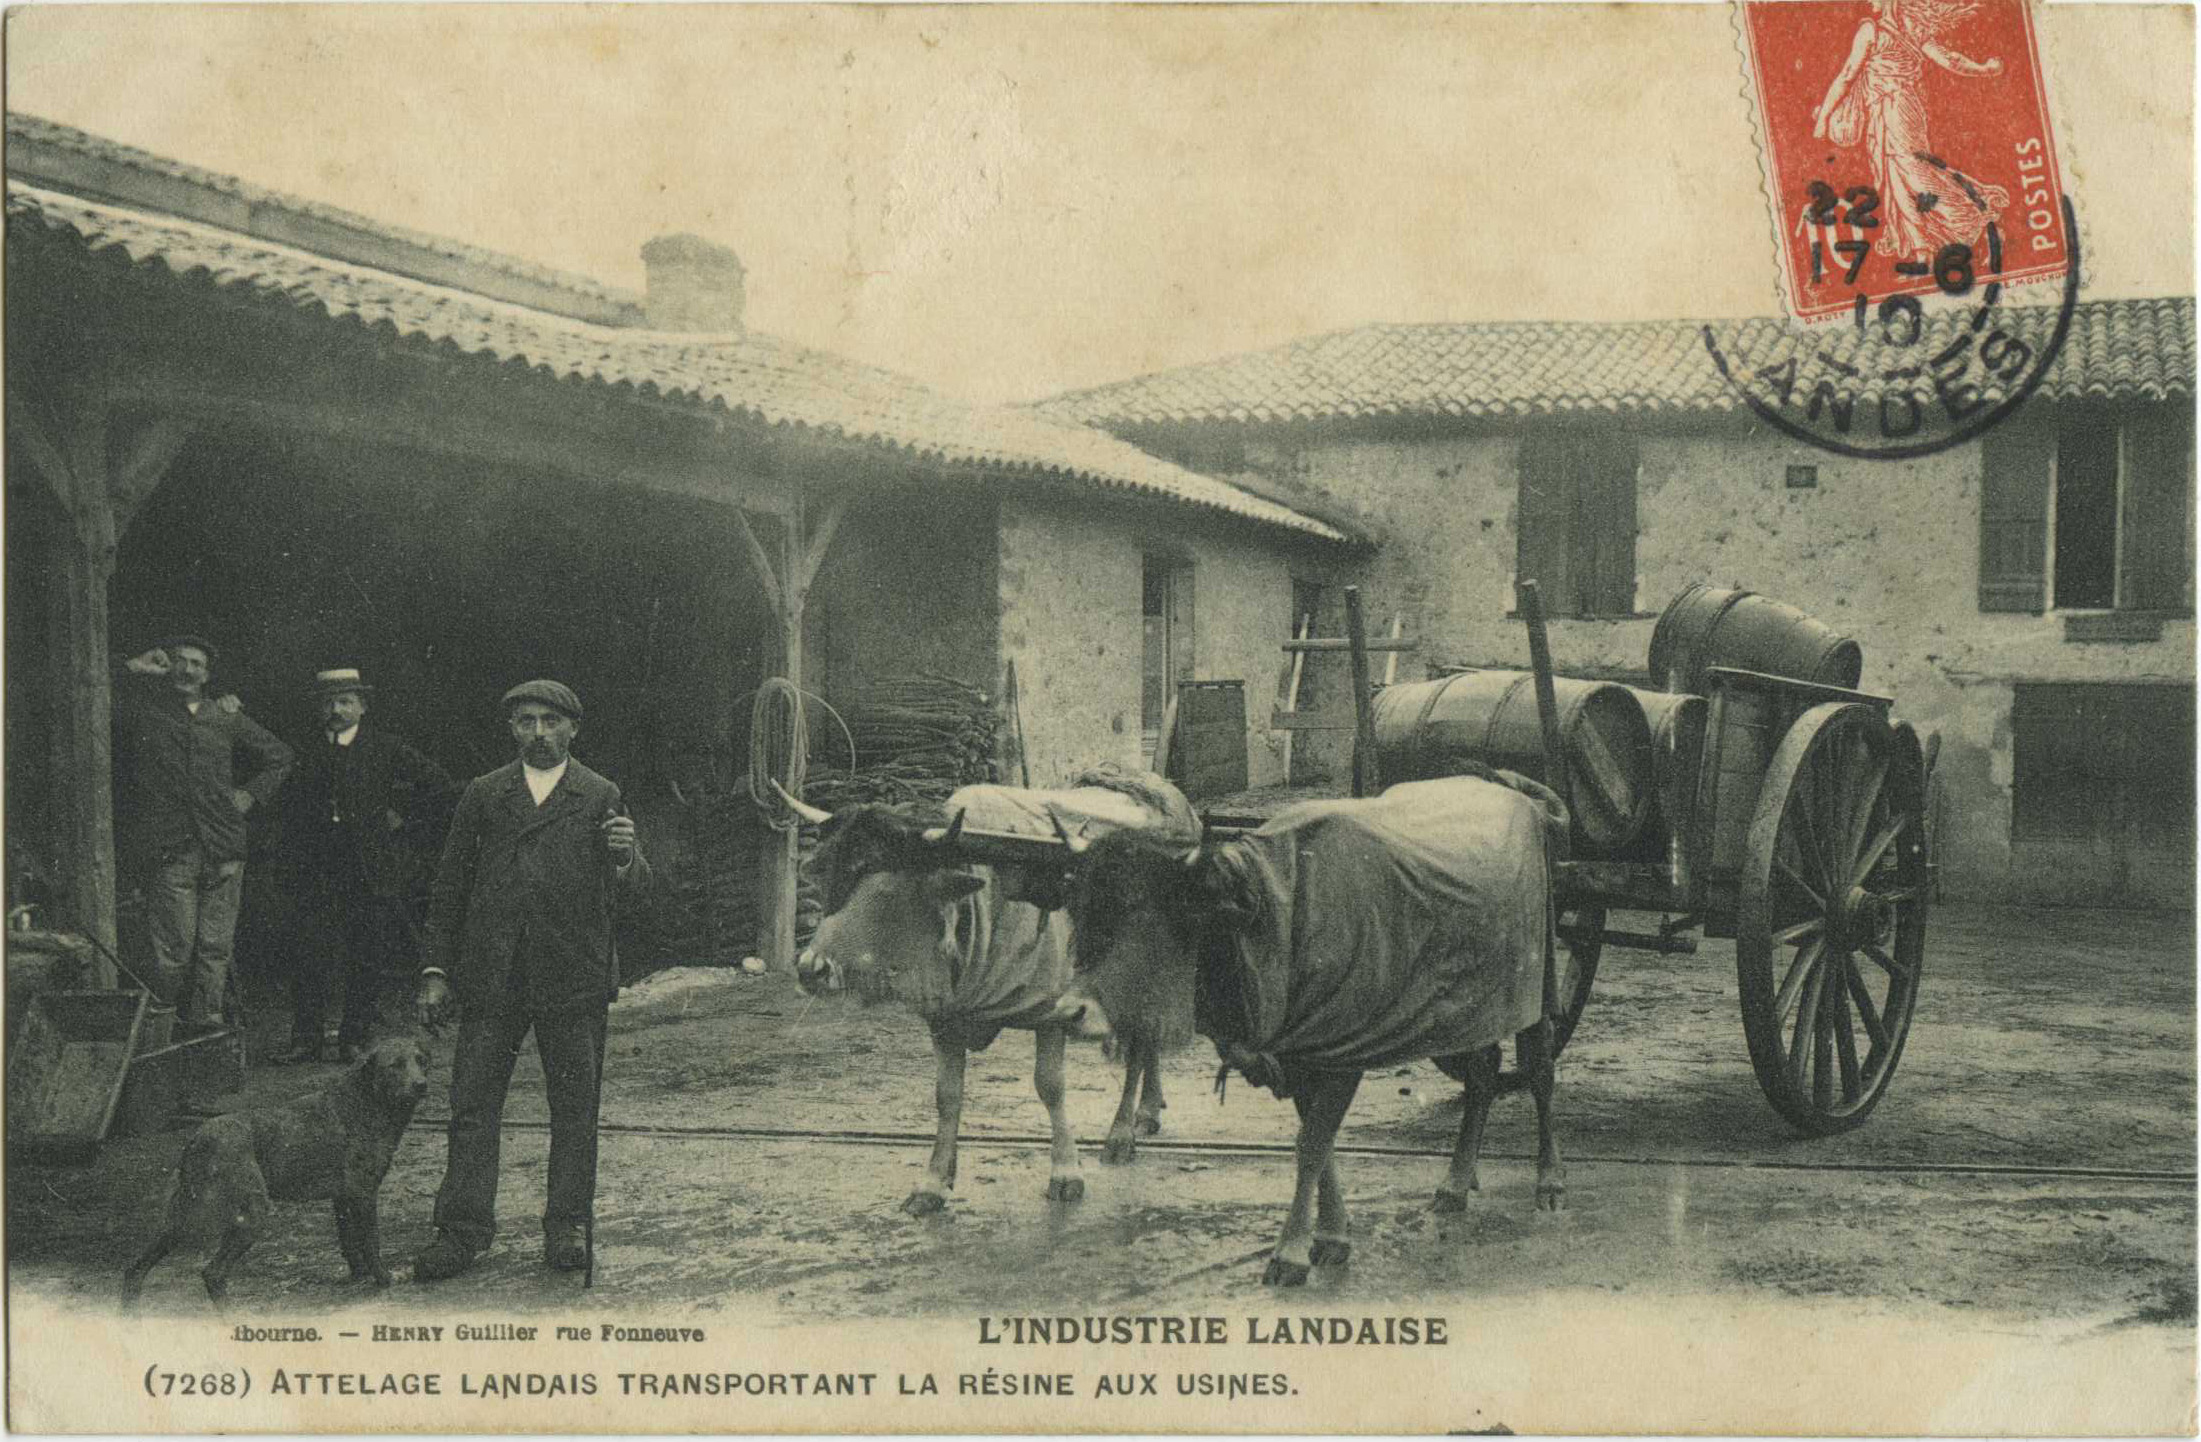 Landes - L'INDUSTRIE LANDAISE - Attelage landais transportant la résine aux usines.